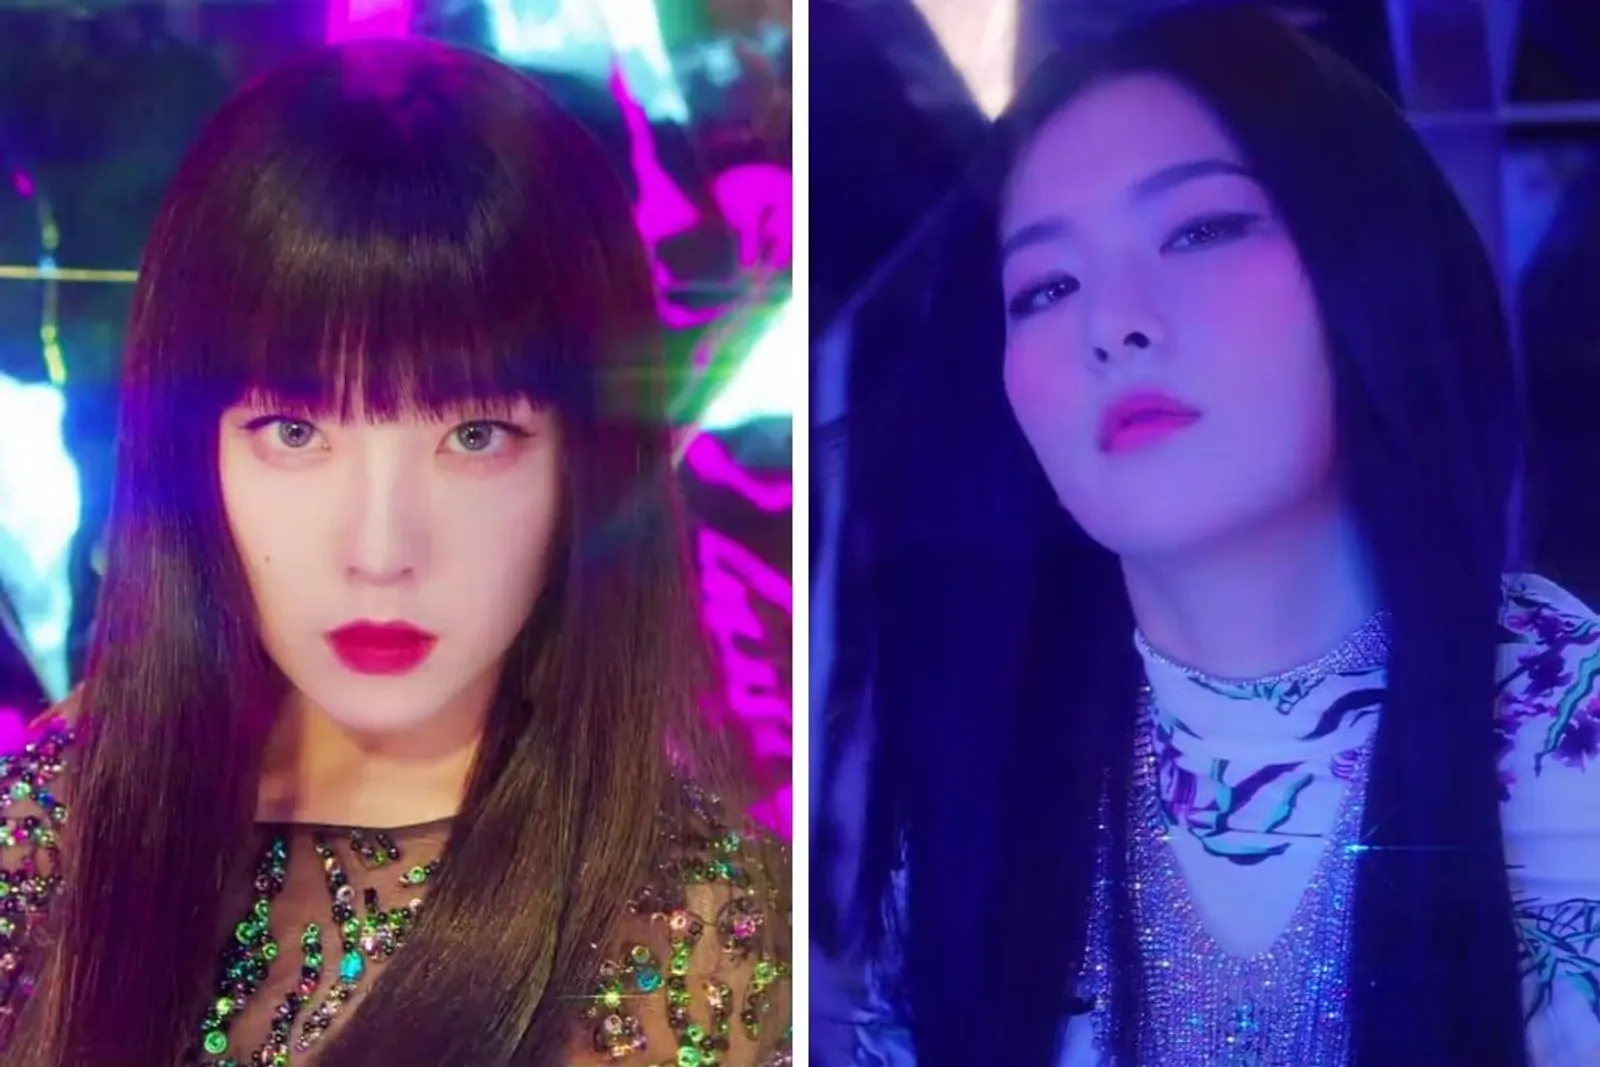 Tampil Beda, Begini Riasan Irene dan Seulgi di Music Video 'Monster'